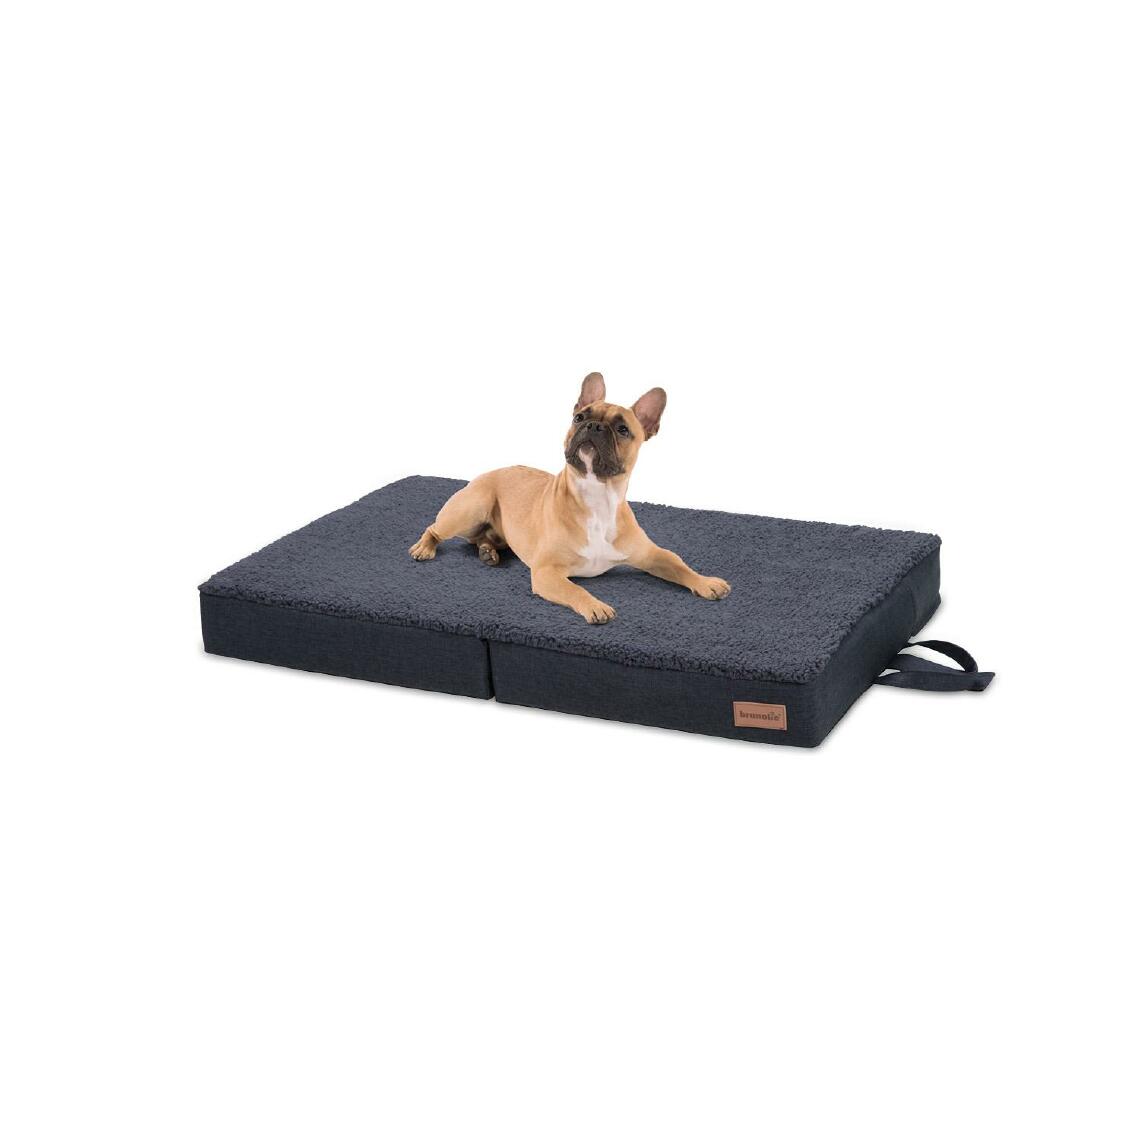 Brunolie - Lit pliable pour chien - Brunolie Paco , lavable, orthopédique et antidérapant - Taille M 80 x 55 cm - Gris - Corbeille pour chien